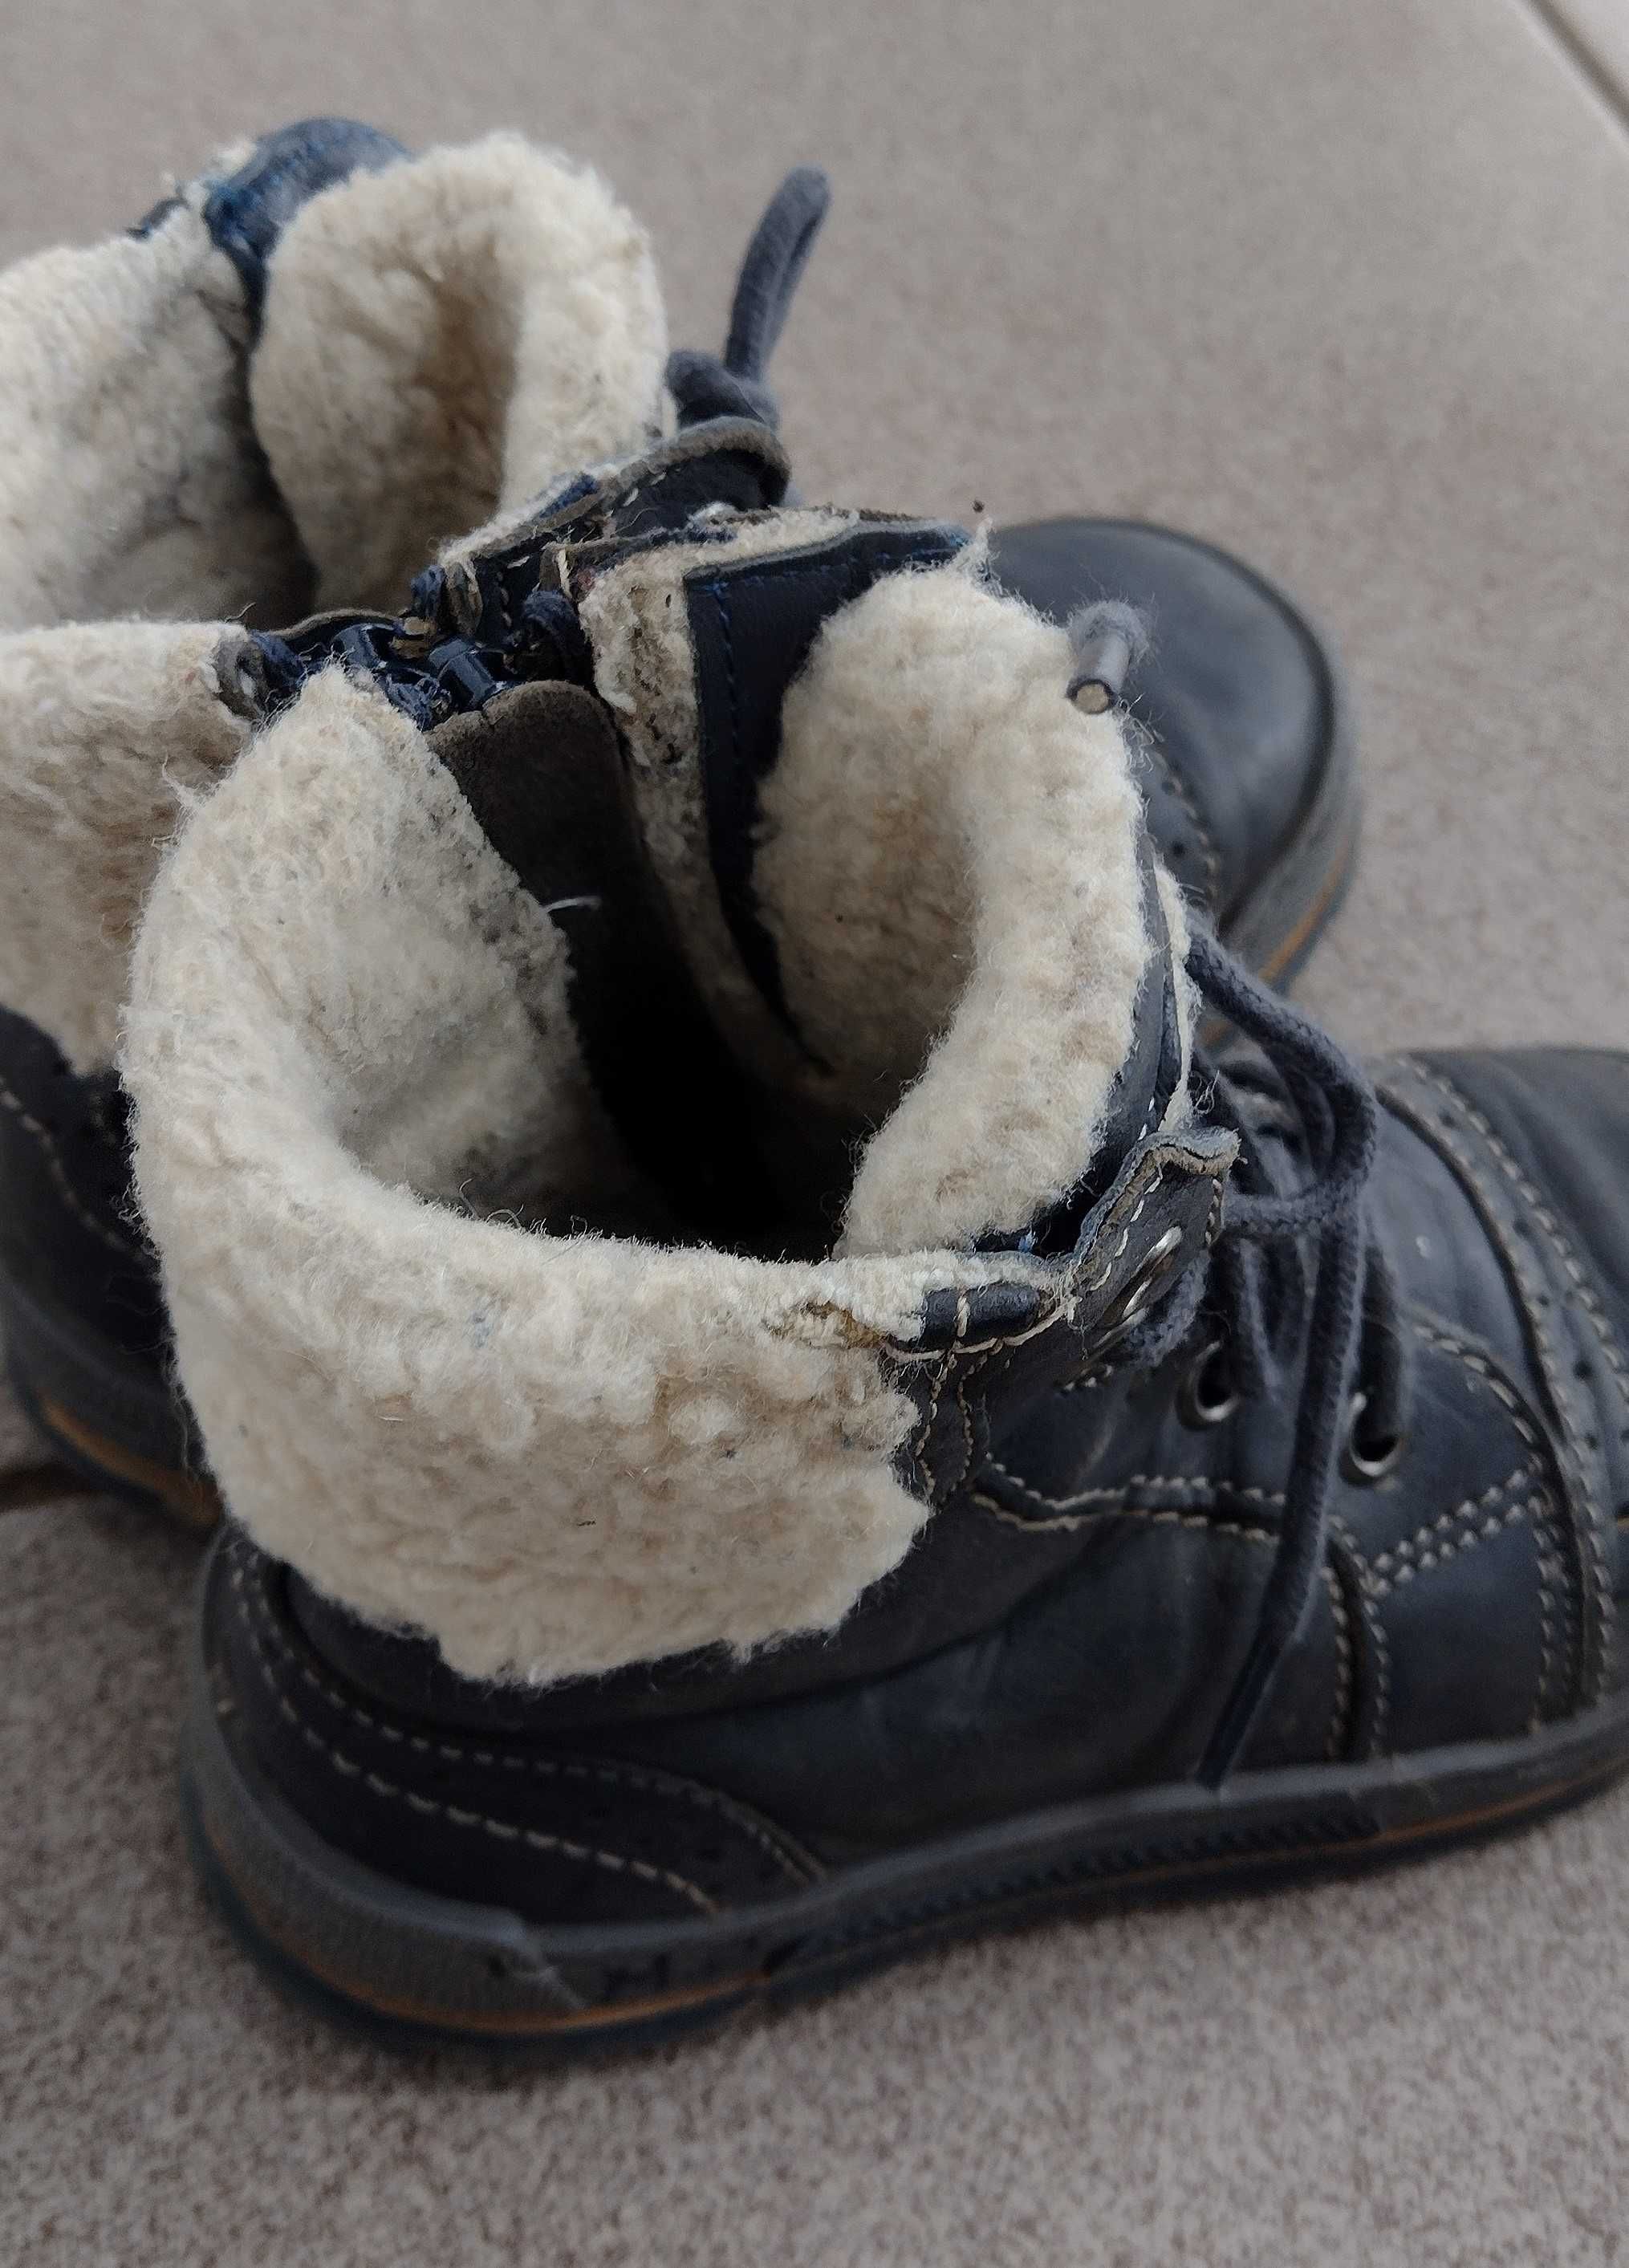 Buty zimowe LASOCKI, 25, długość wkładki wewnętrznej 15,9-16 cm